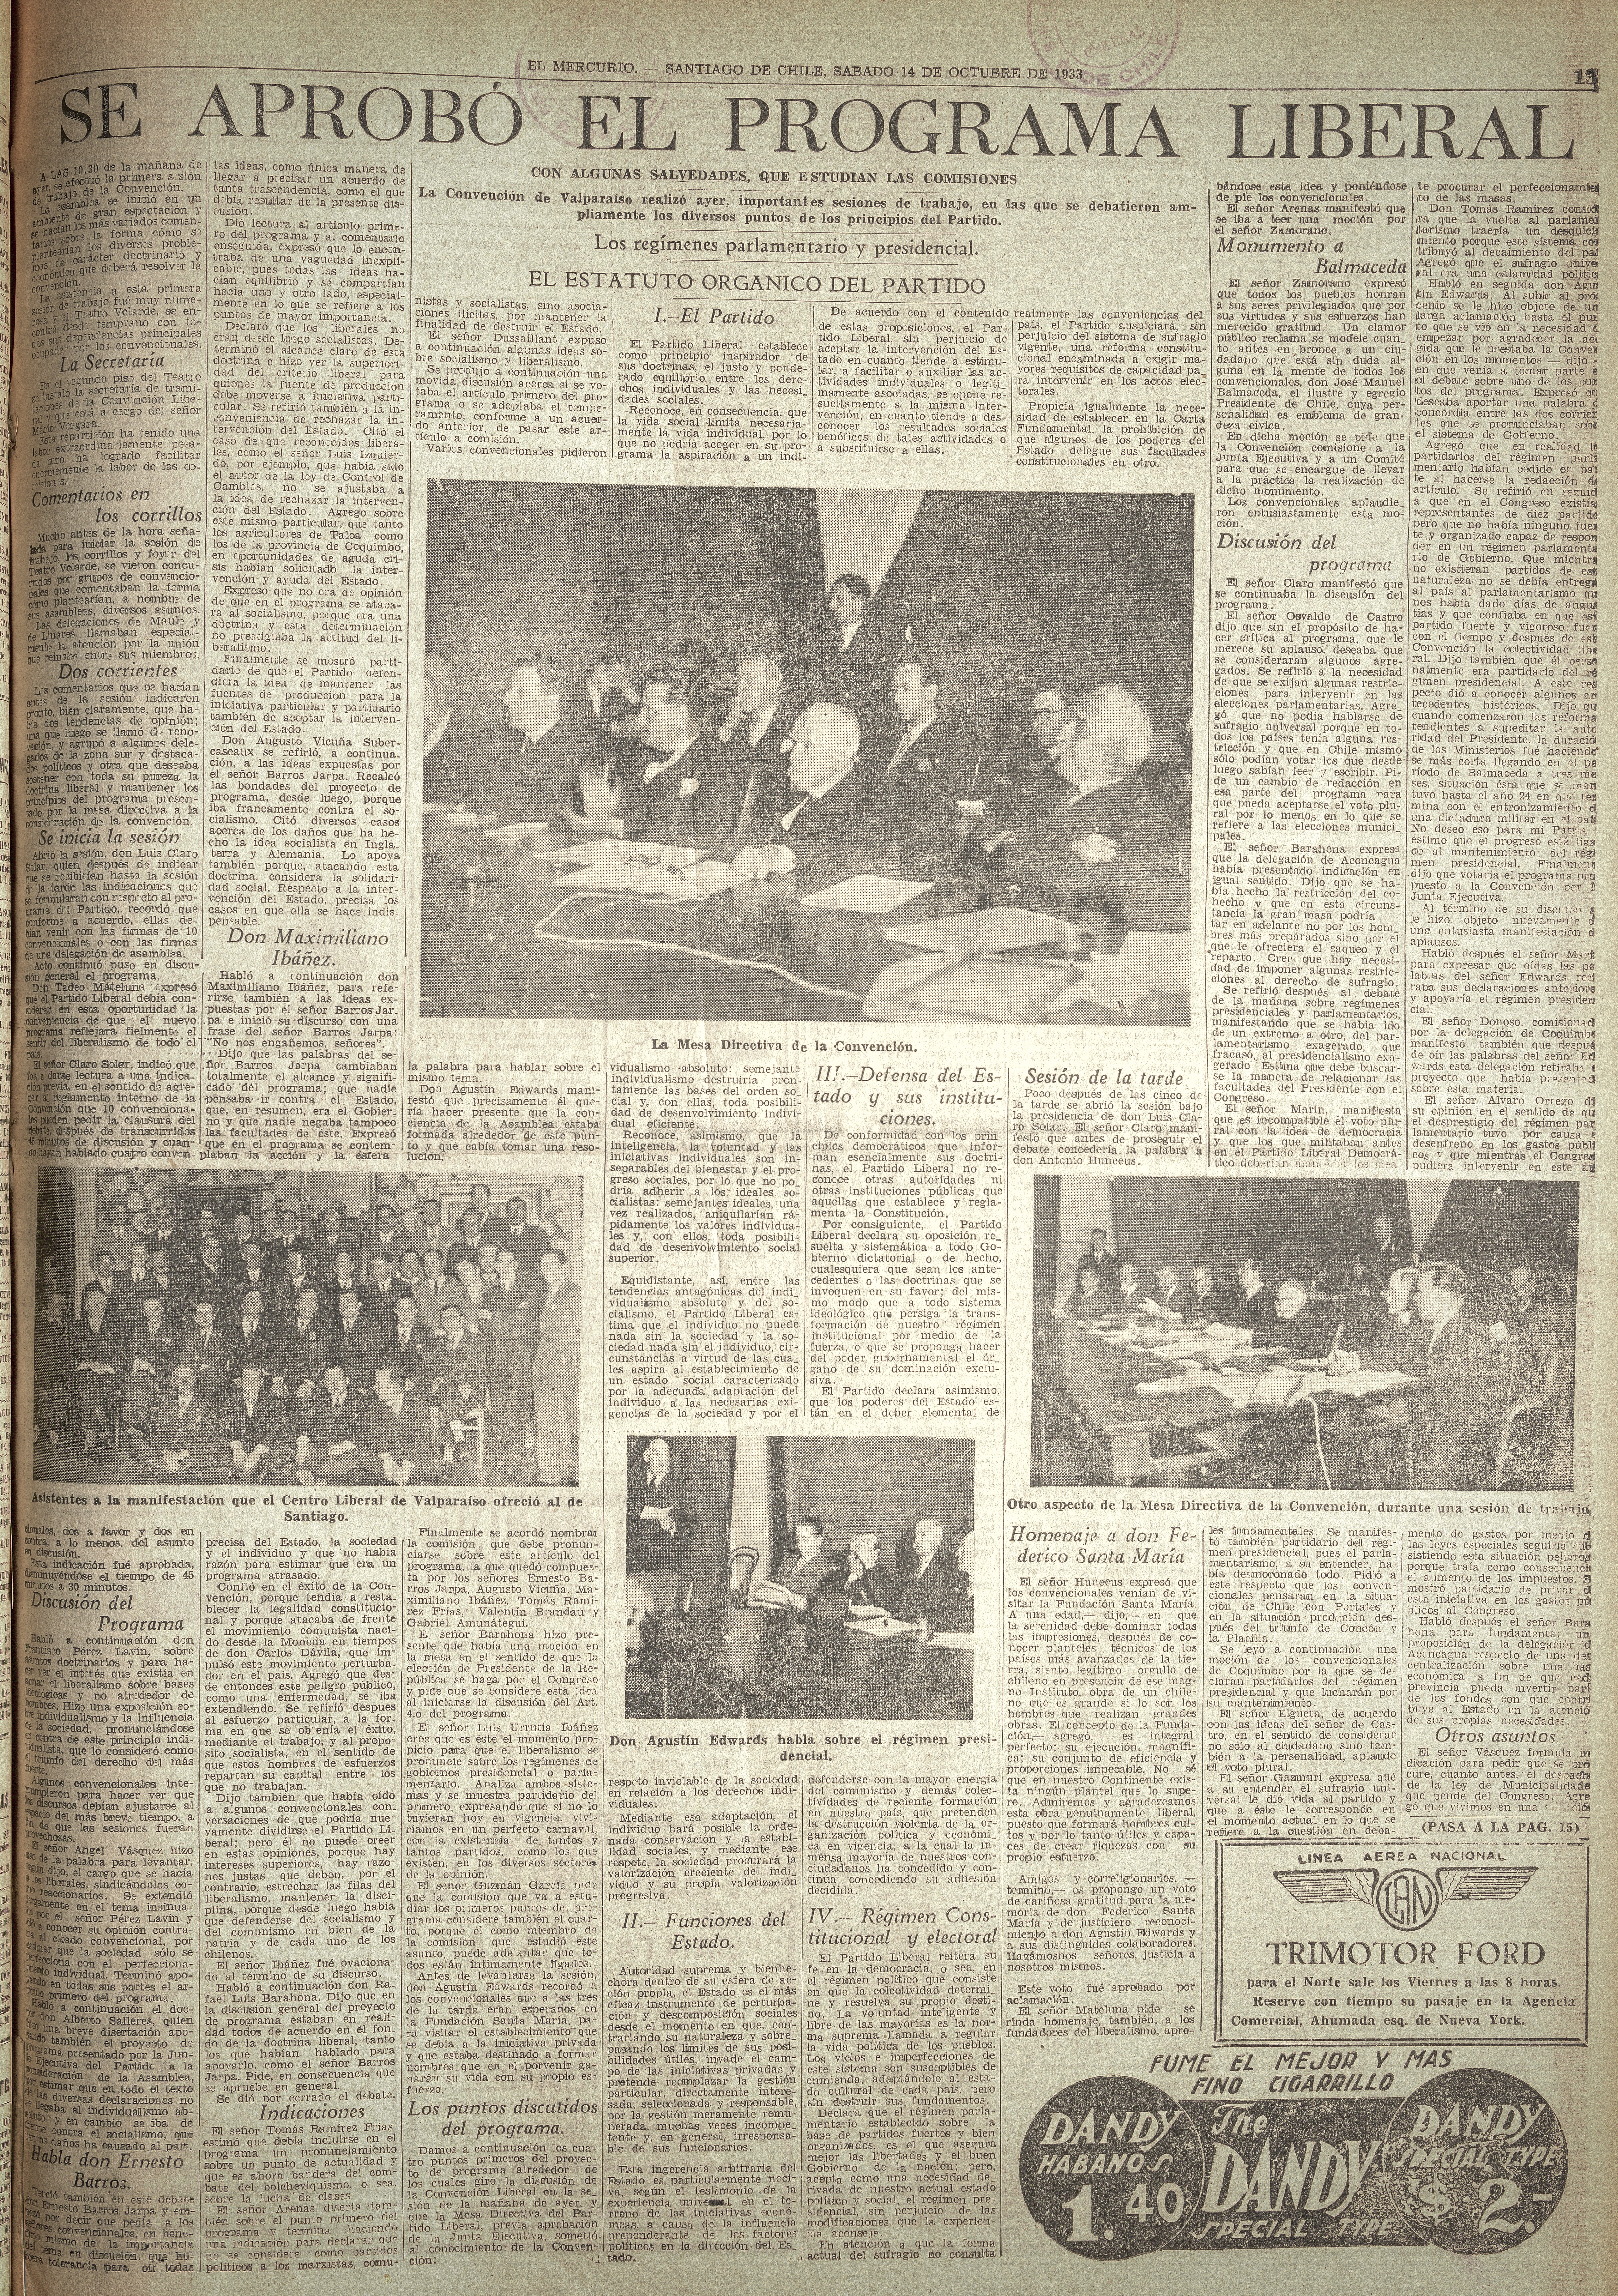 "Se aprobó el programa Liberal", Diario El Mercurio, Santiago 14 de Santiago 14 de octubre de 1933